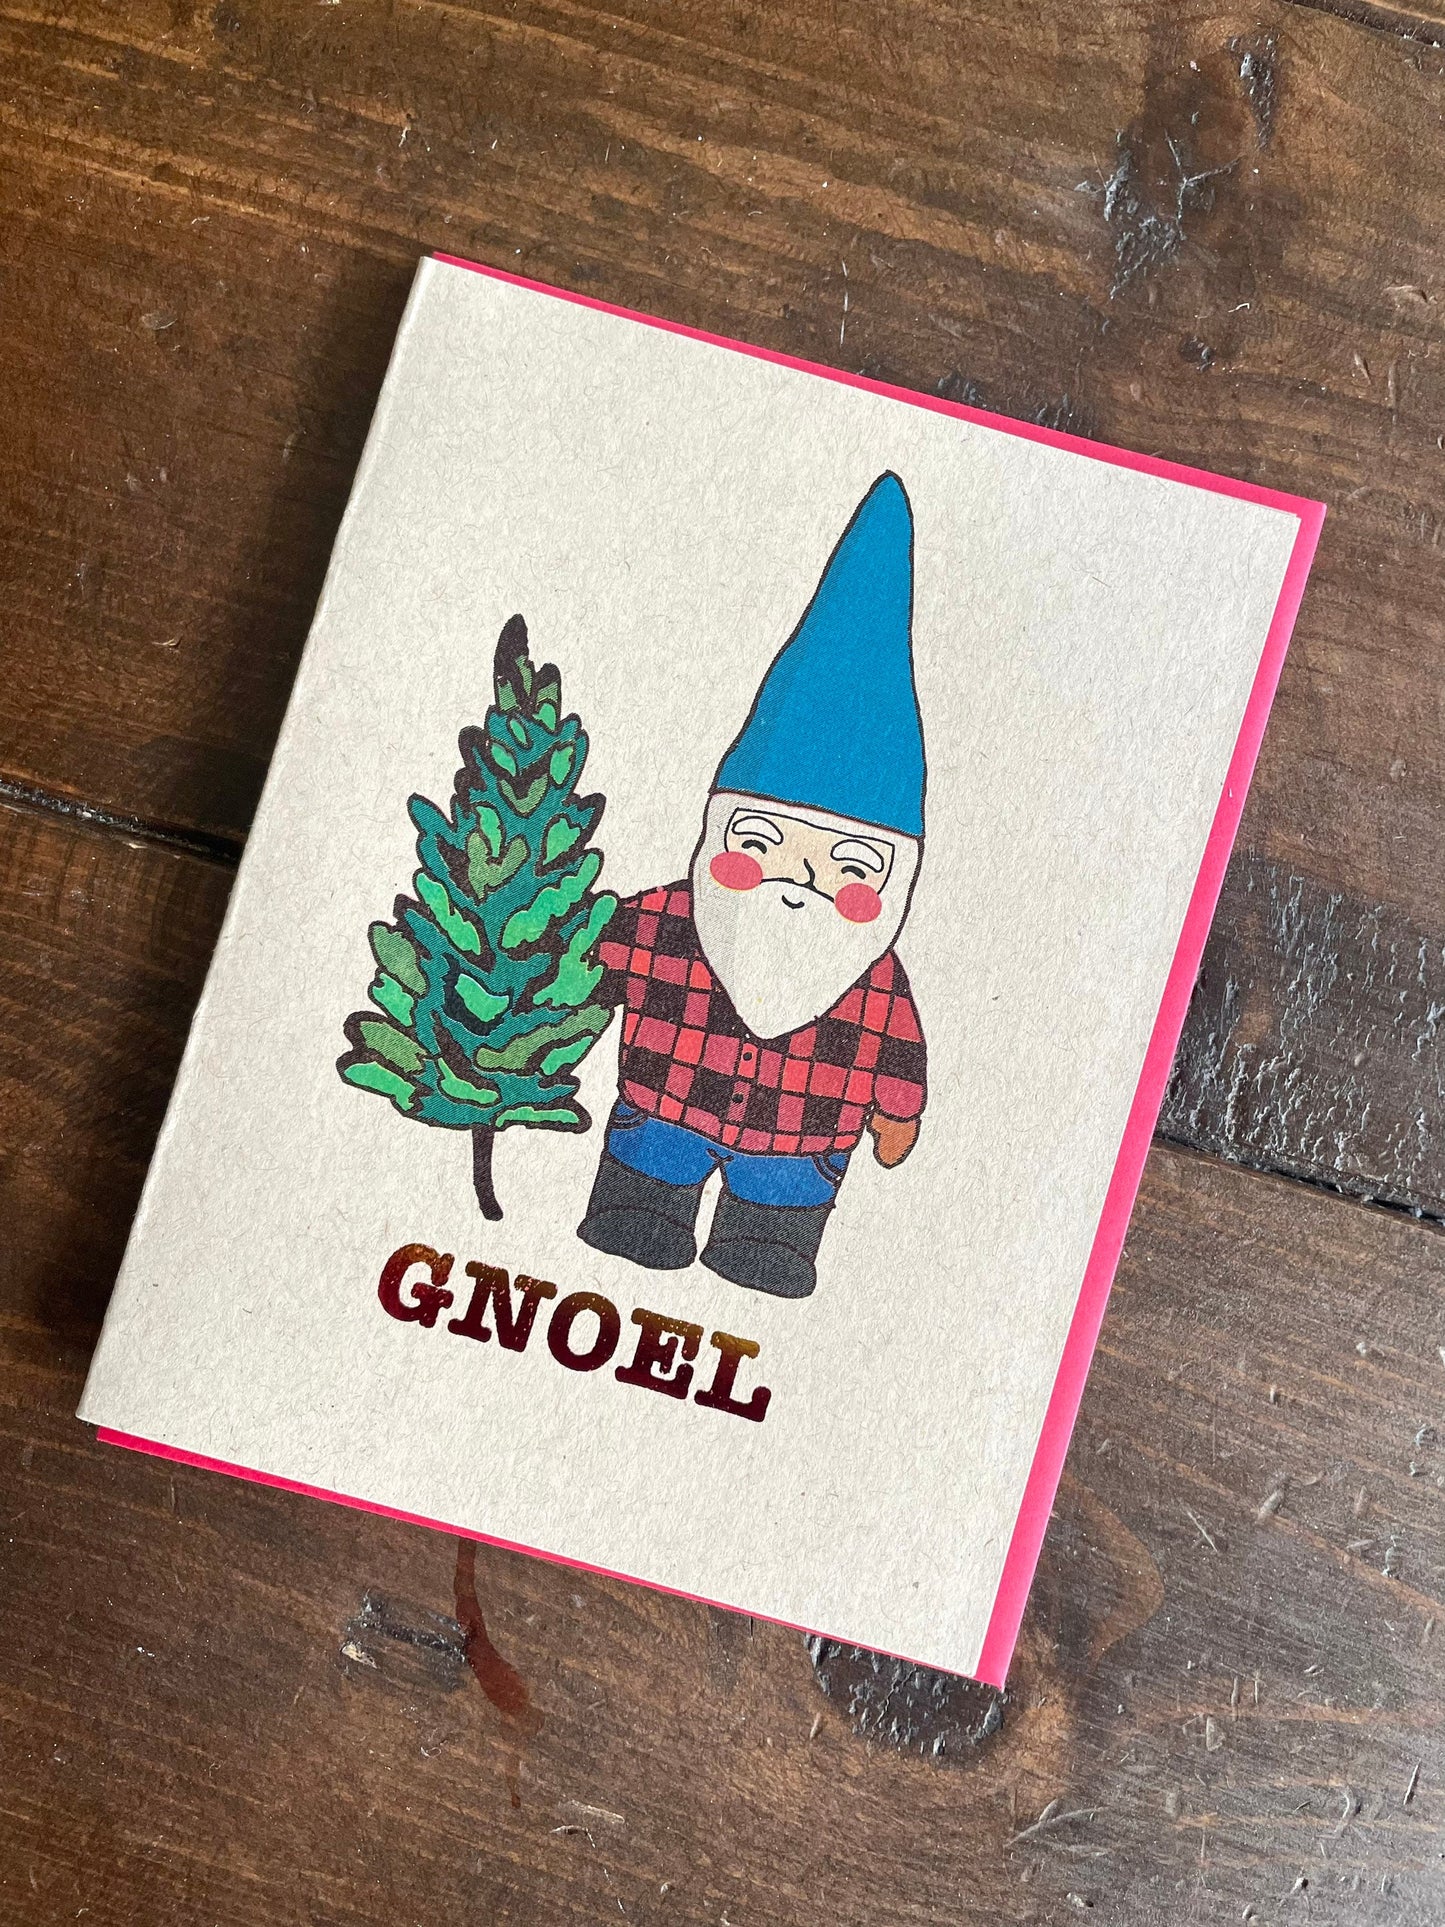 Gnome Christmas Card - A2 Handmade Santa Gnome Holiday Card, Noel Punny Holiday Card